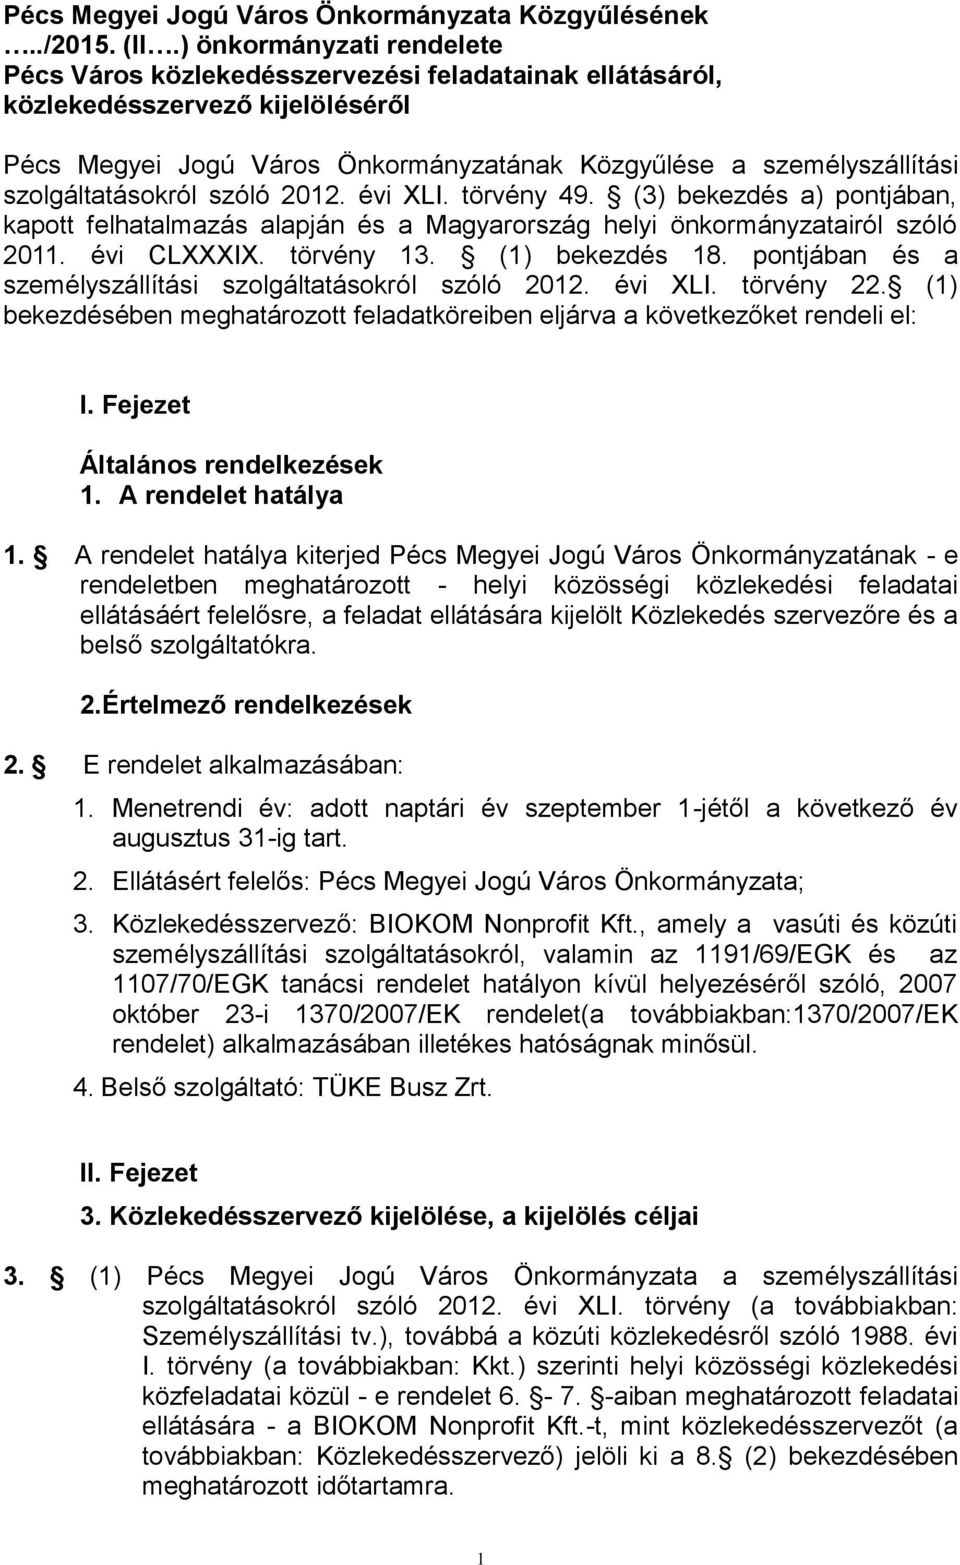 szolgáltatásokról szóló 202. évi XLI. törvény 49. (3) bekezdés a) pontjában, kapott felhatalmazás alapján és a Magyarország helyi önkormányzatairól szóló 20. évi CLXXXIX. törvény 3. () bekezdés 8.